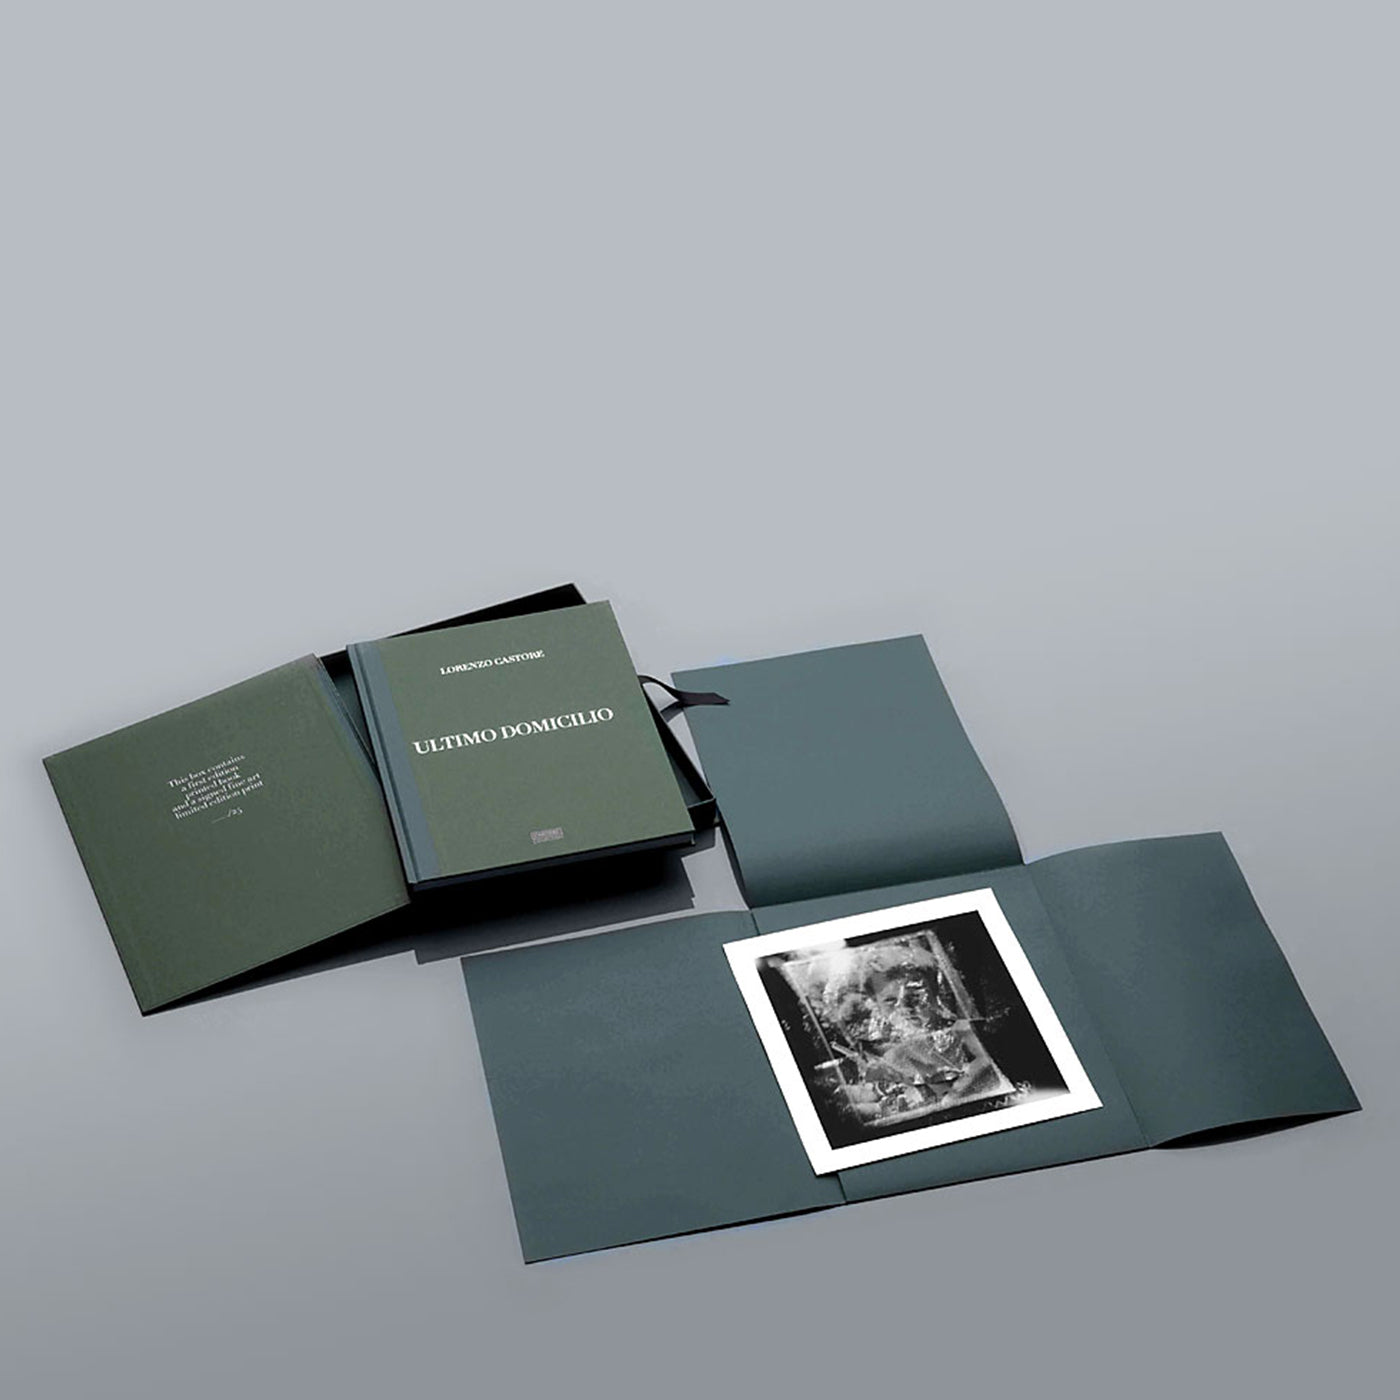 Ultimo Domicilio - Special Edition Box Set - Lorenzo Castore - Limitierte Auflage von 25 Exemplaren  - Alternative Ansicht 5